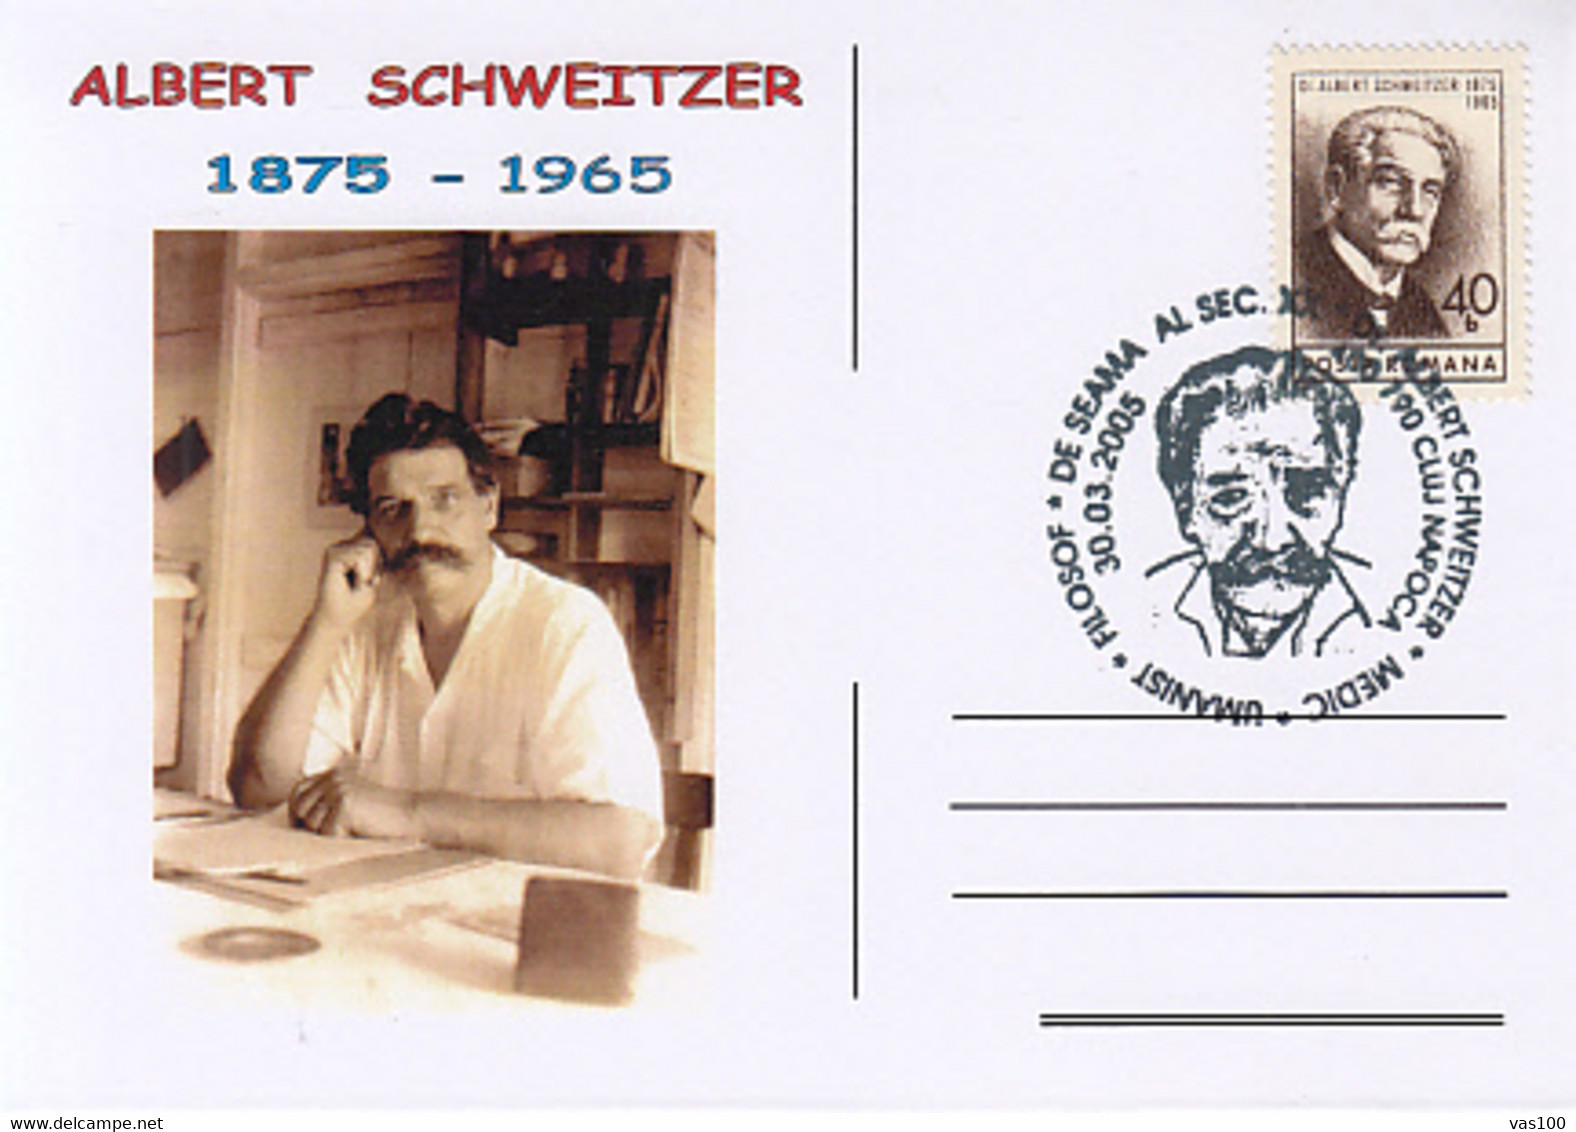 FAMOUS PEOPLE, ALBERT SCHWEITZER, DOCTOR, HUMANIST, PHILOSOPHER, SPECIAL POSTCARD, 2005, ROMANIA - Albert Schweitzer